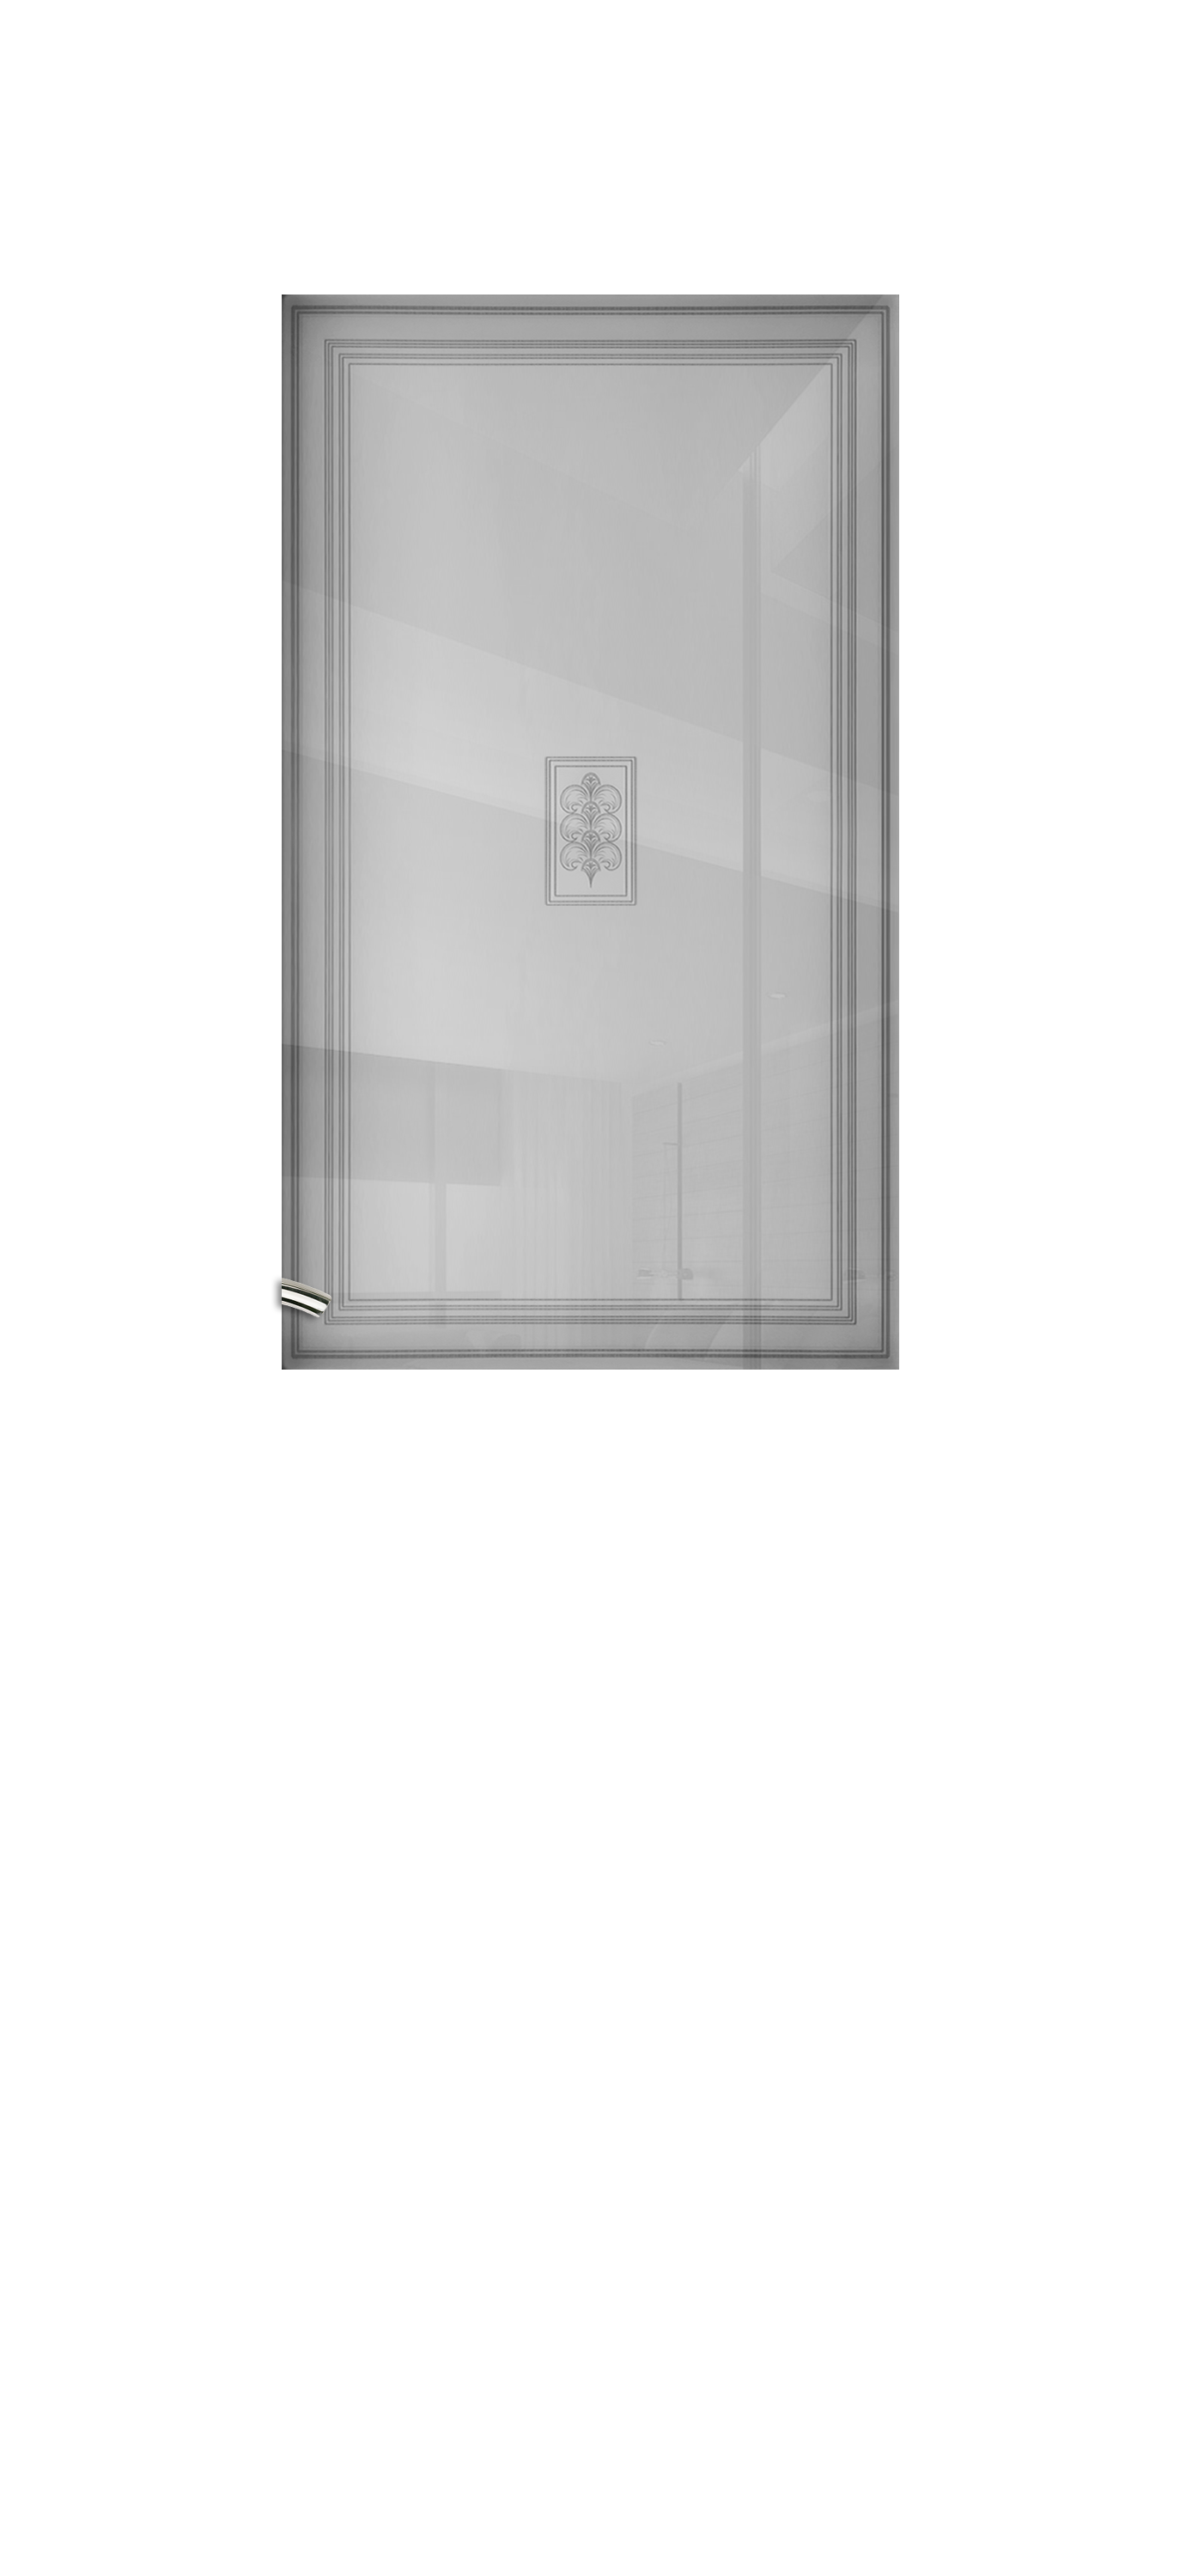 Межкомнатная дверь «Vision 5». Вид отделки Белая эмаль Остекление:  Cтандартный наличник